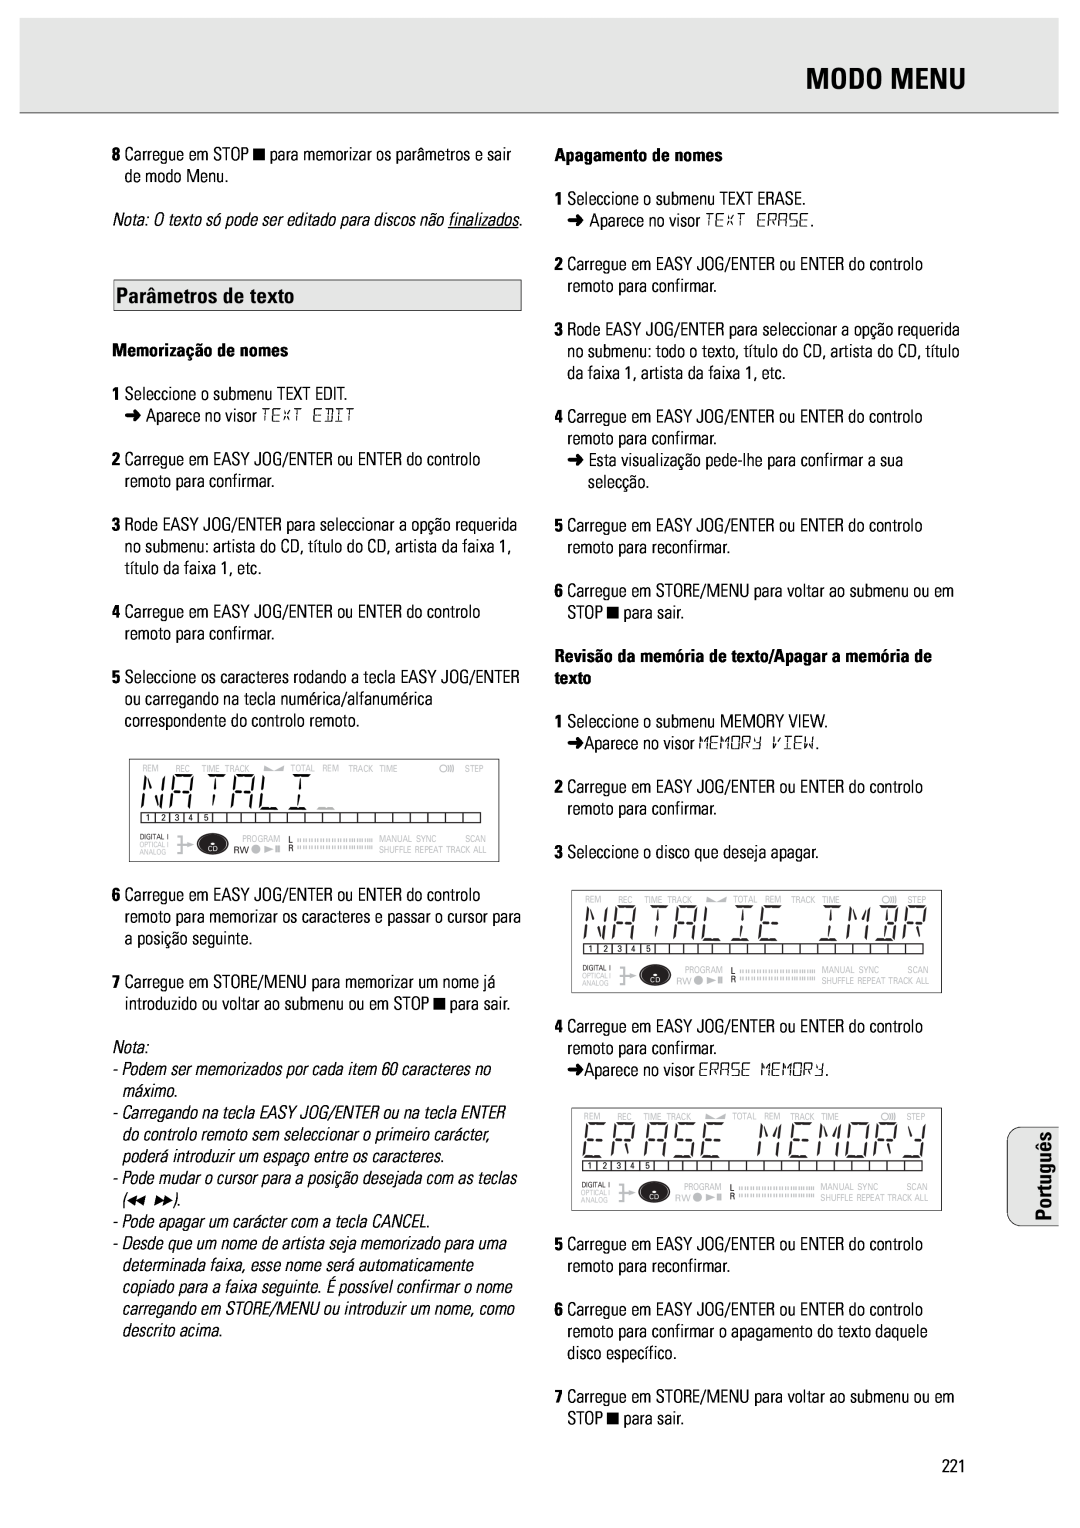 Philips CDR570 Modo Menu, Parâmetros de texto, Nota Podem ser memorizados por cada item 60 caracteres no máximo, Português 